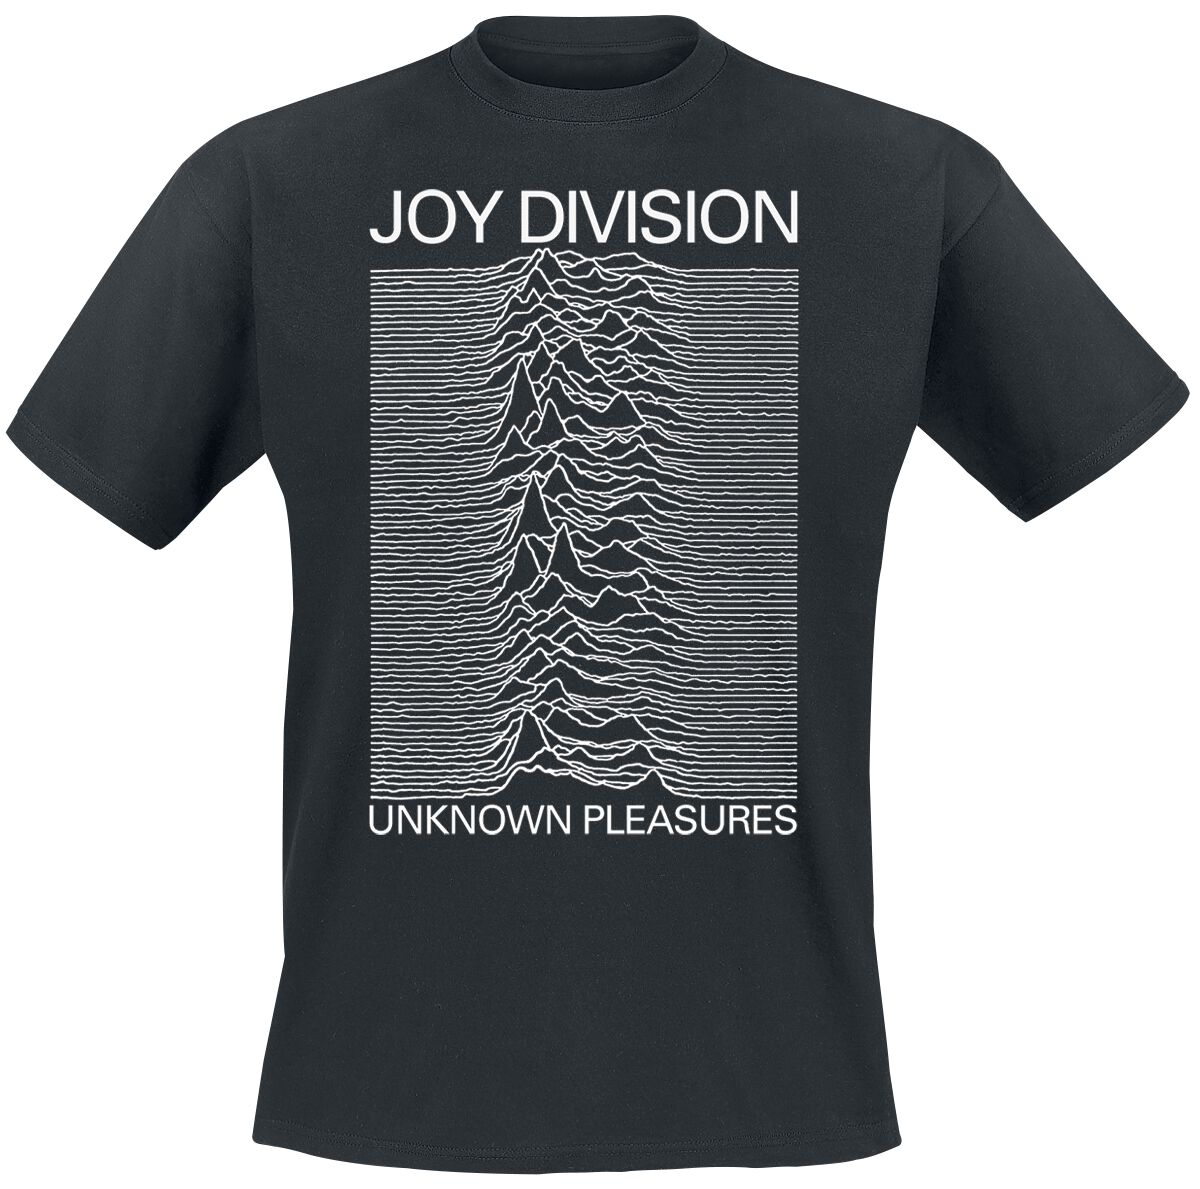 Joy Division T-Shirt - Unknown pleasures - S bis XXL - für Männer - Größe M - schwarz  - Lizenziertes Merchandise!